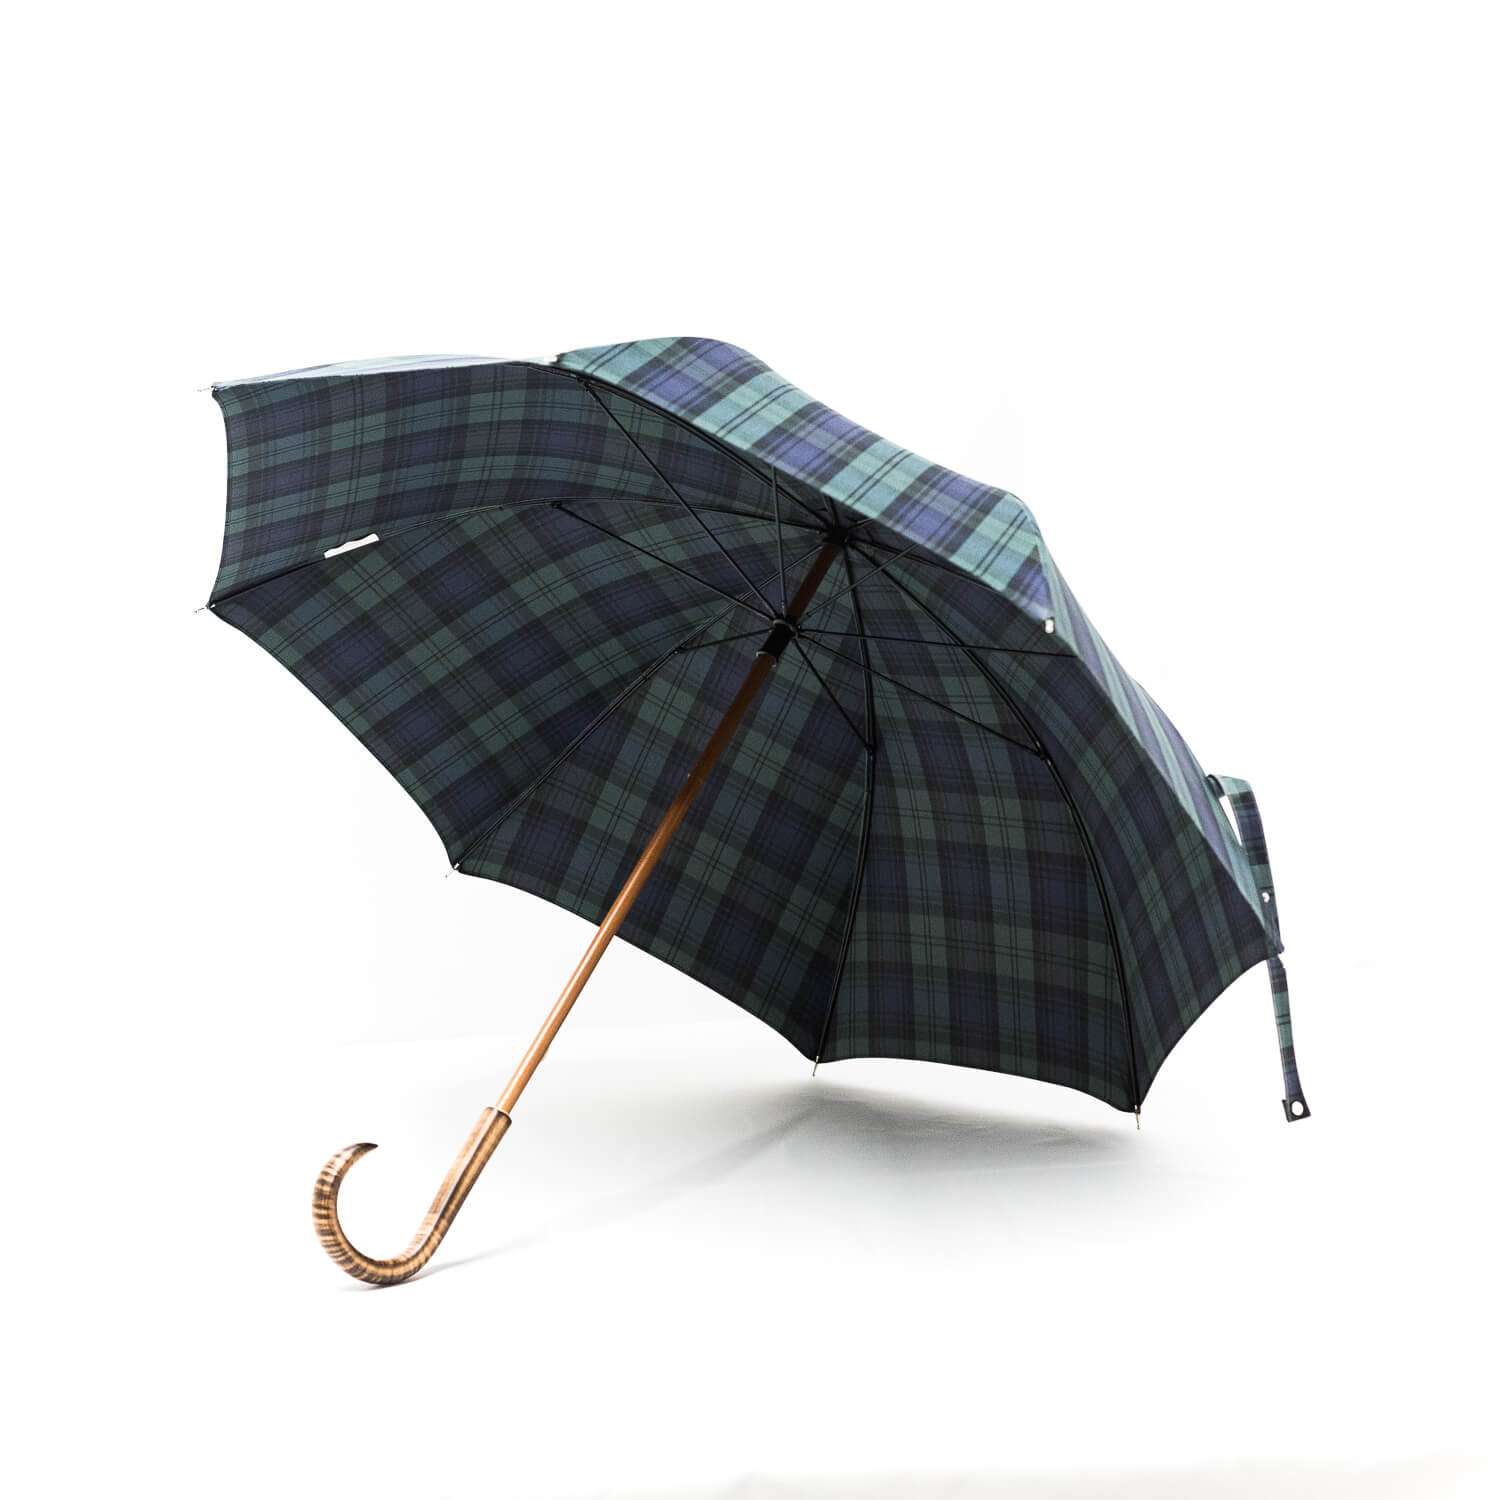 Parapluie droit tissé écossais vert et bleu